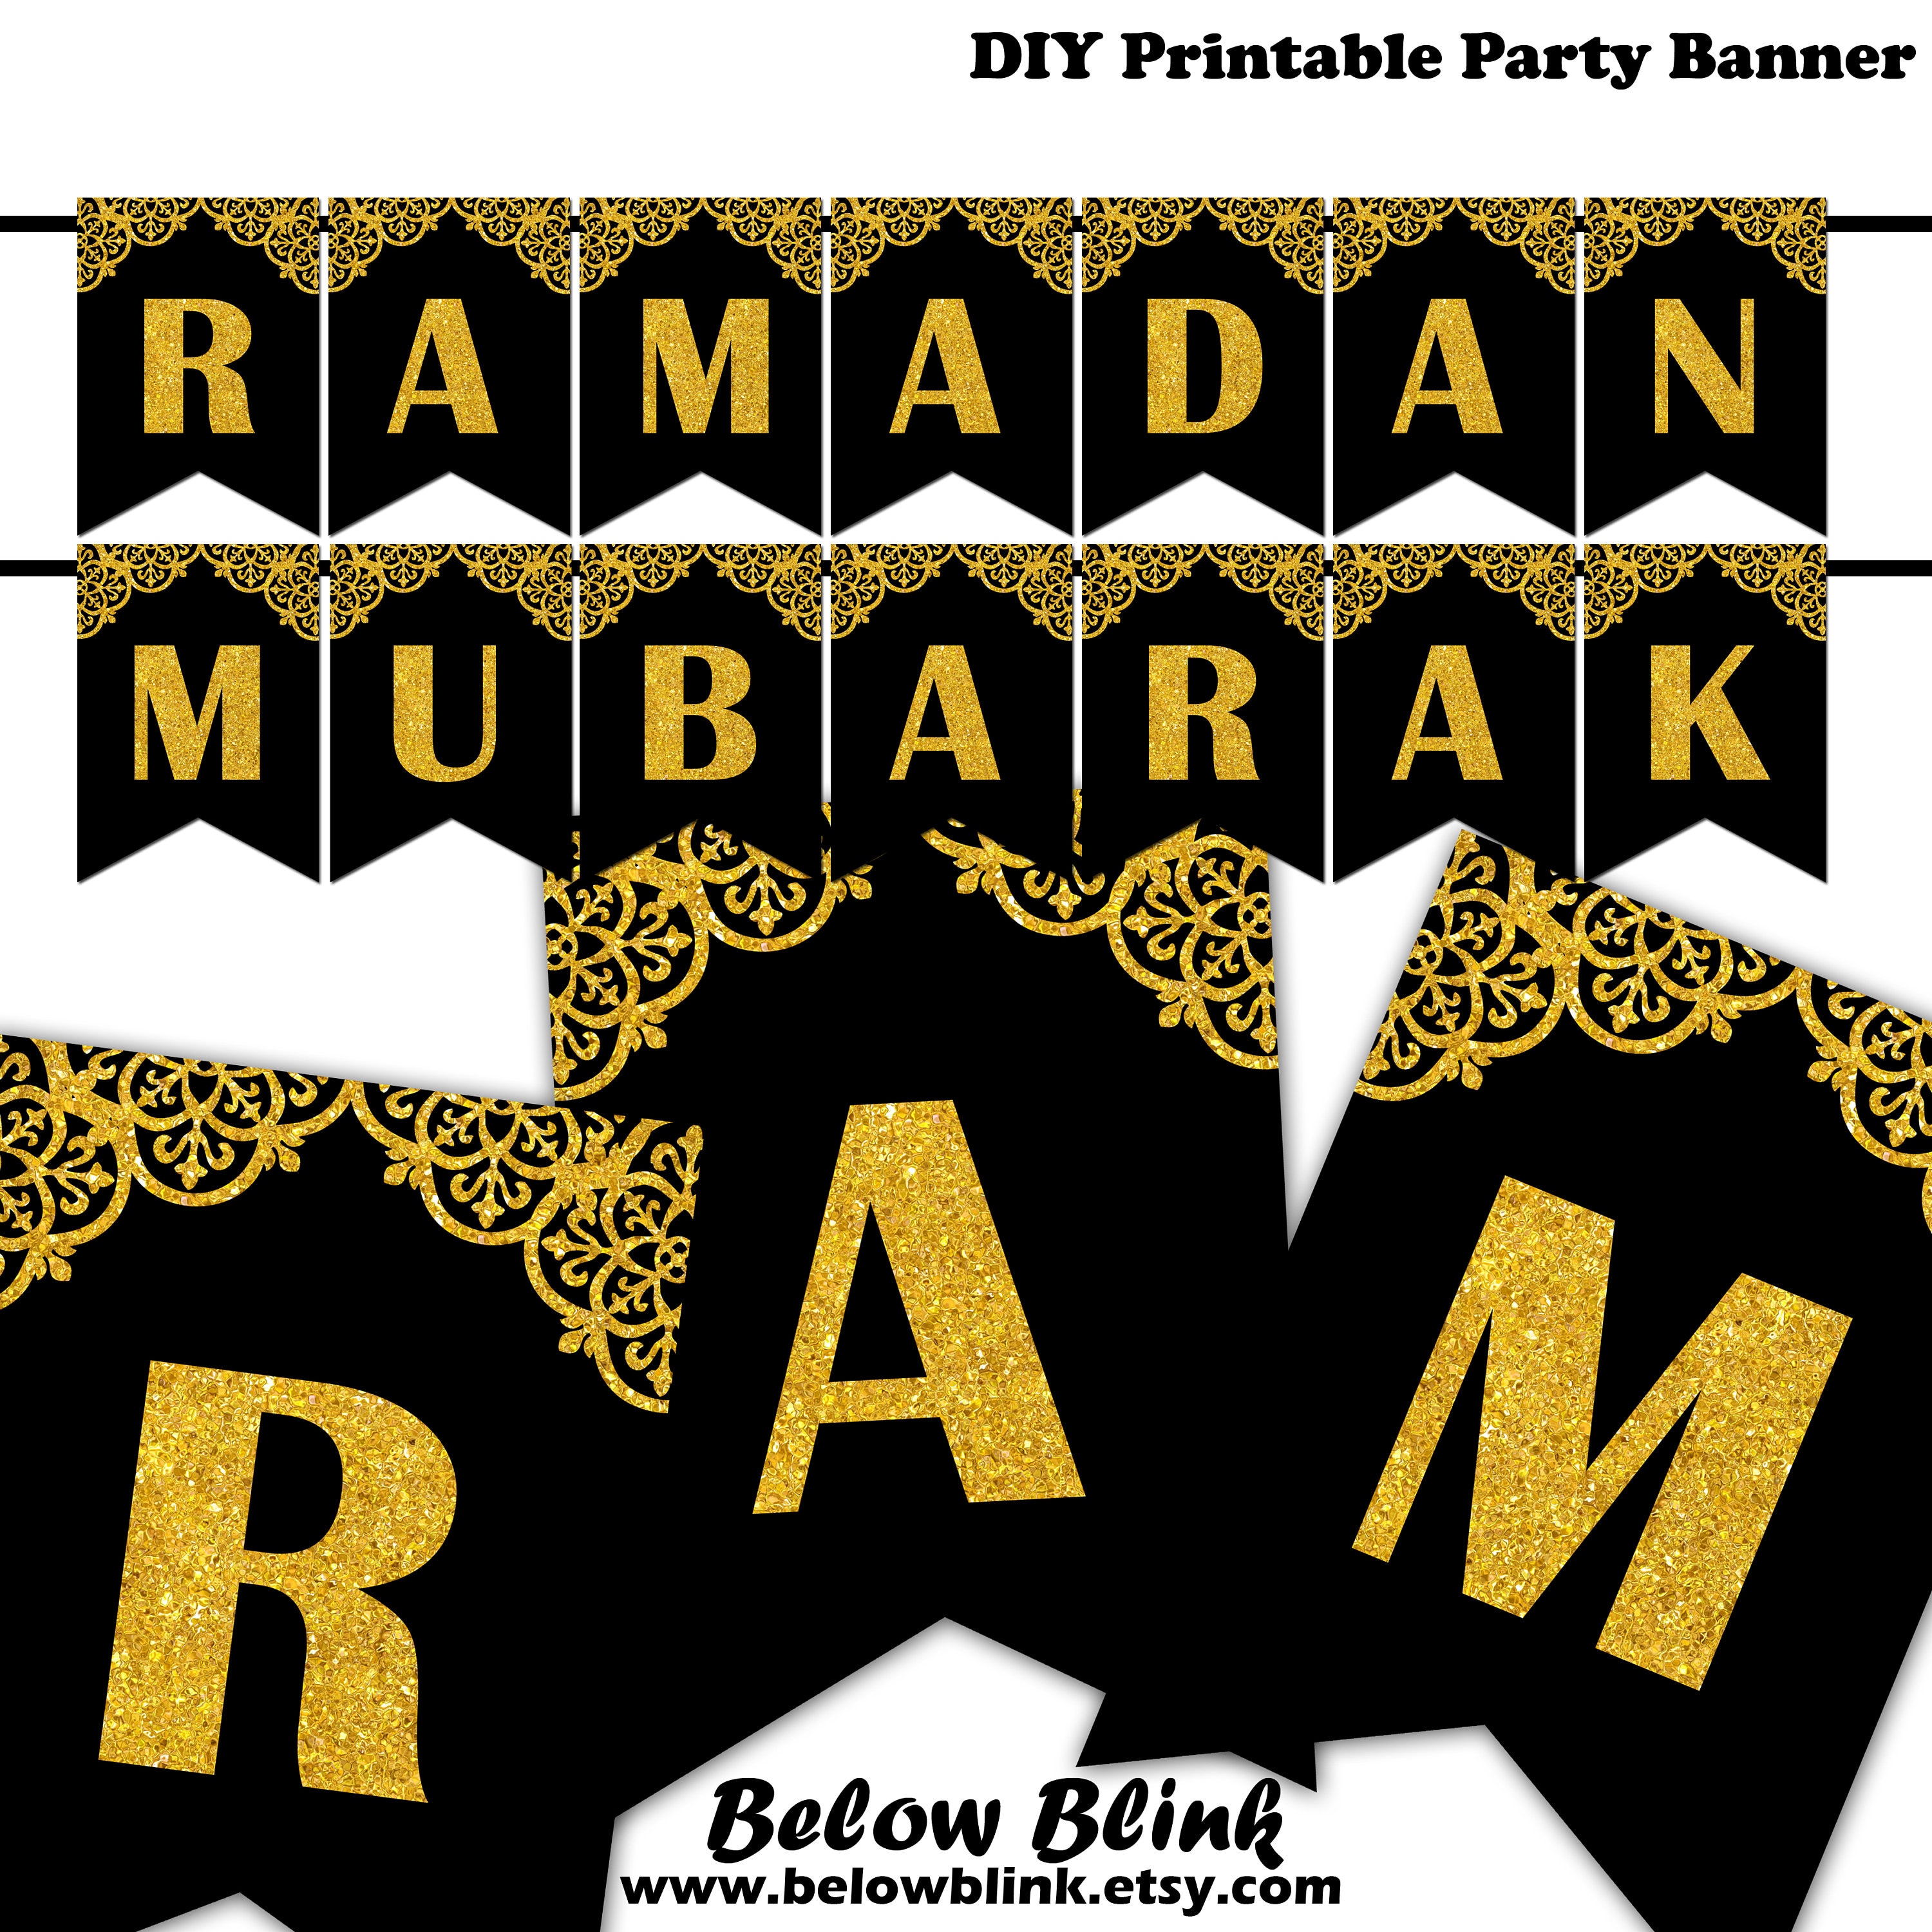 Printable Ramadan Banner - Printable Templates